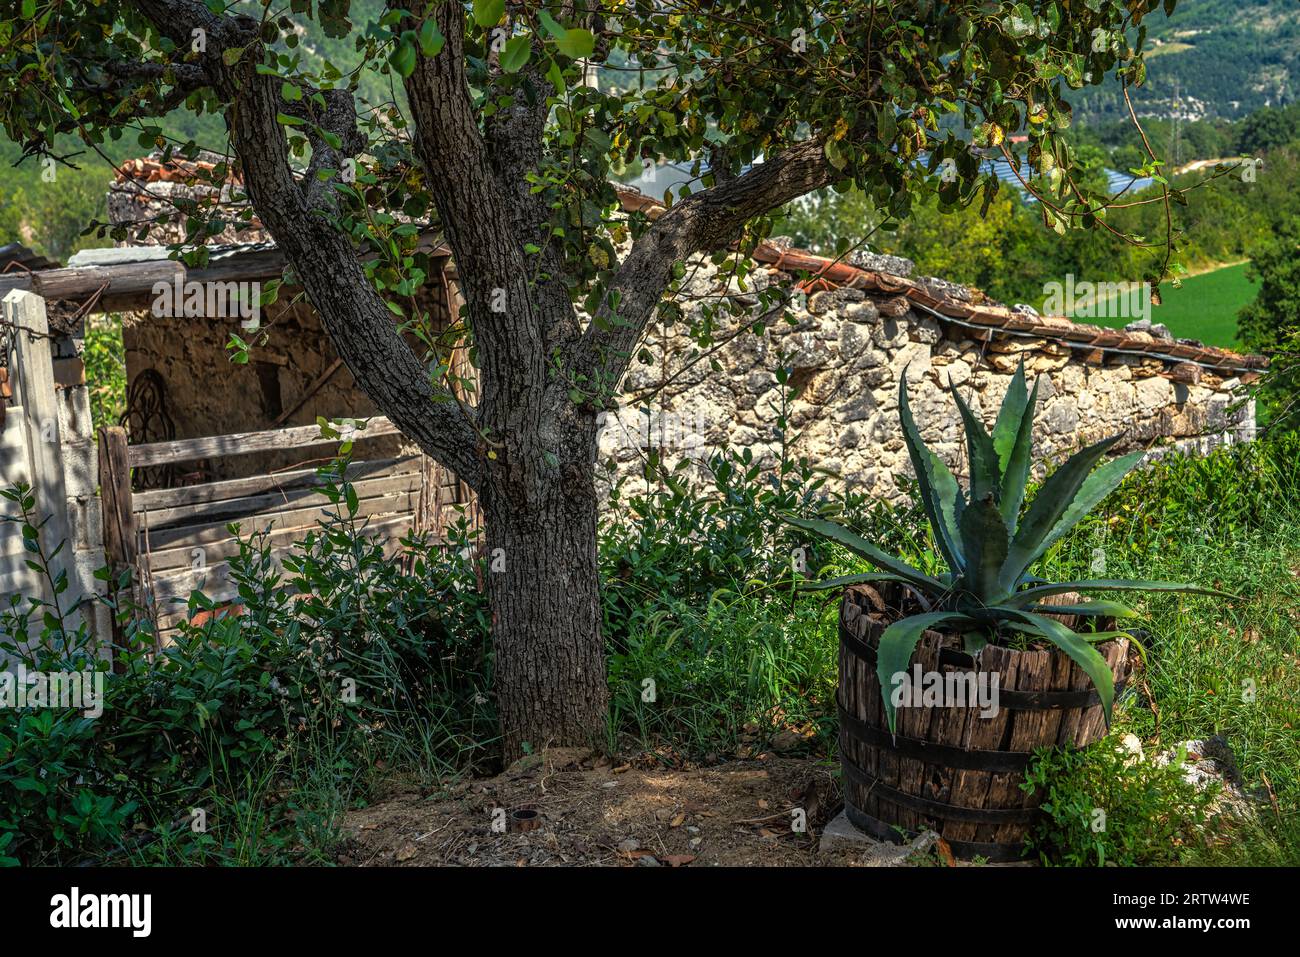 Dans un petit jardin un plant de pomme et un agave dans un pot en bois. Région des Marches, Italie, Europe Banque D'Images